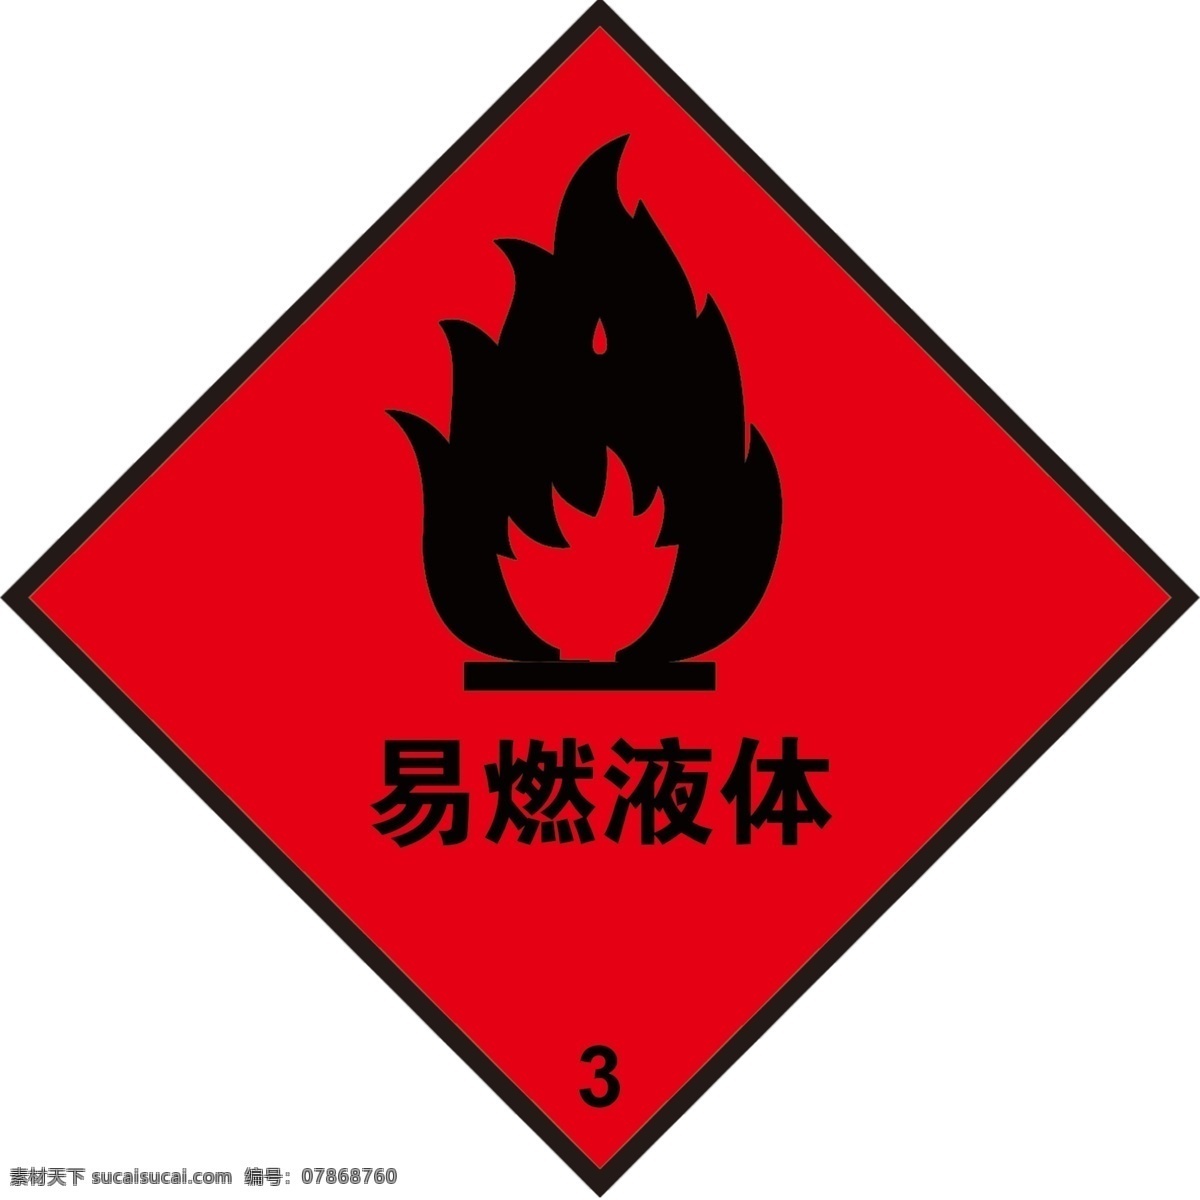 易燃液体图片 标示 警告 易燃液体 公共标志 安全标志 标志图标 公共标识标志